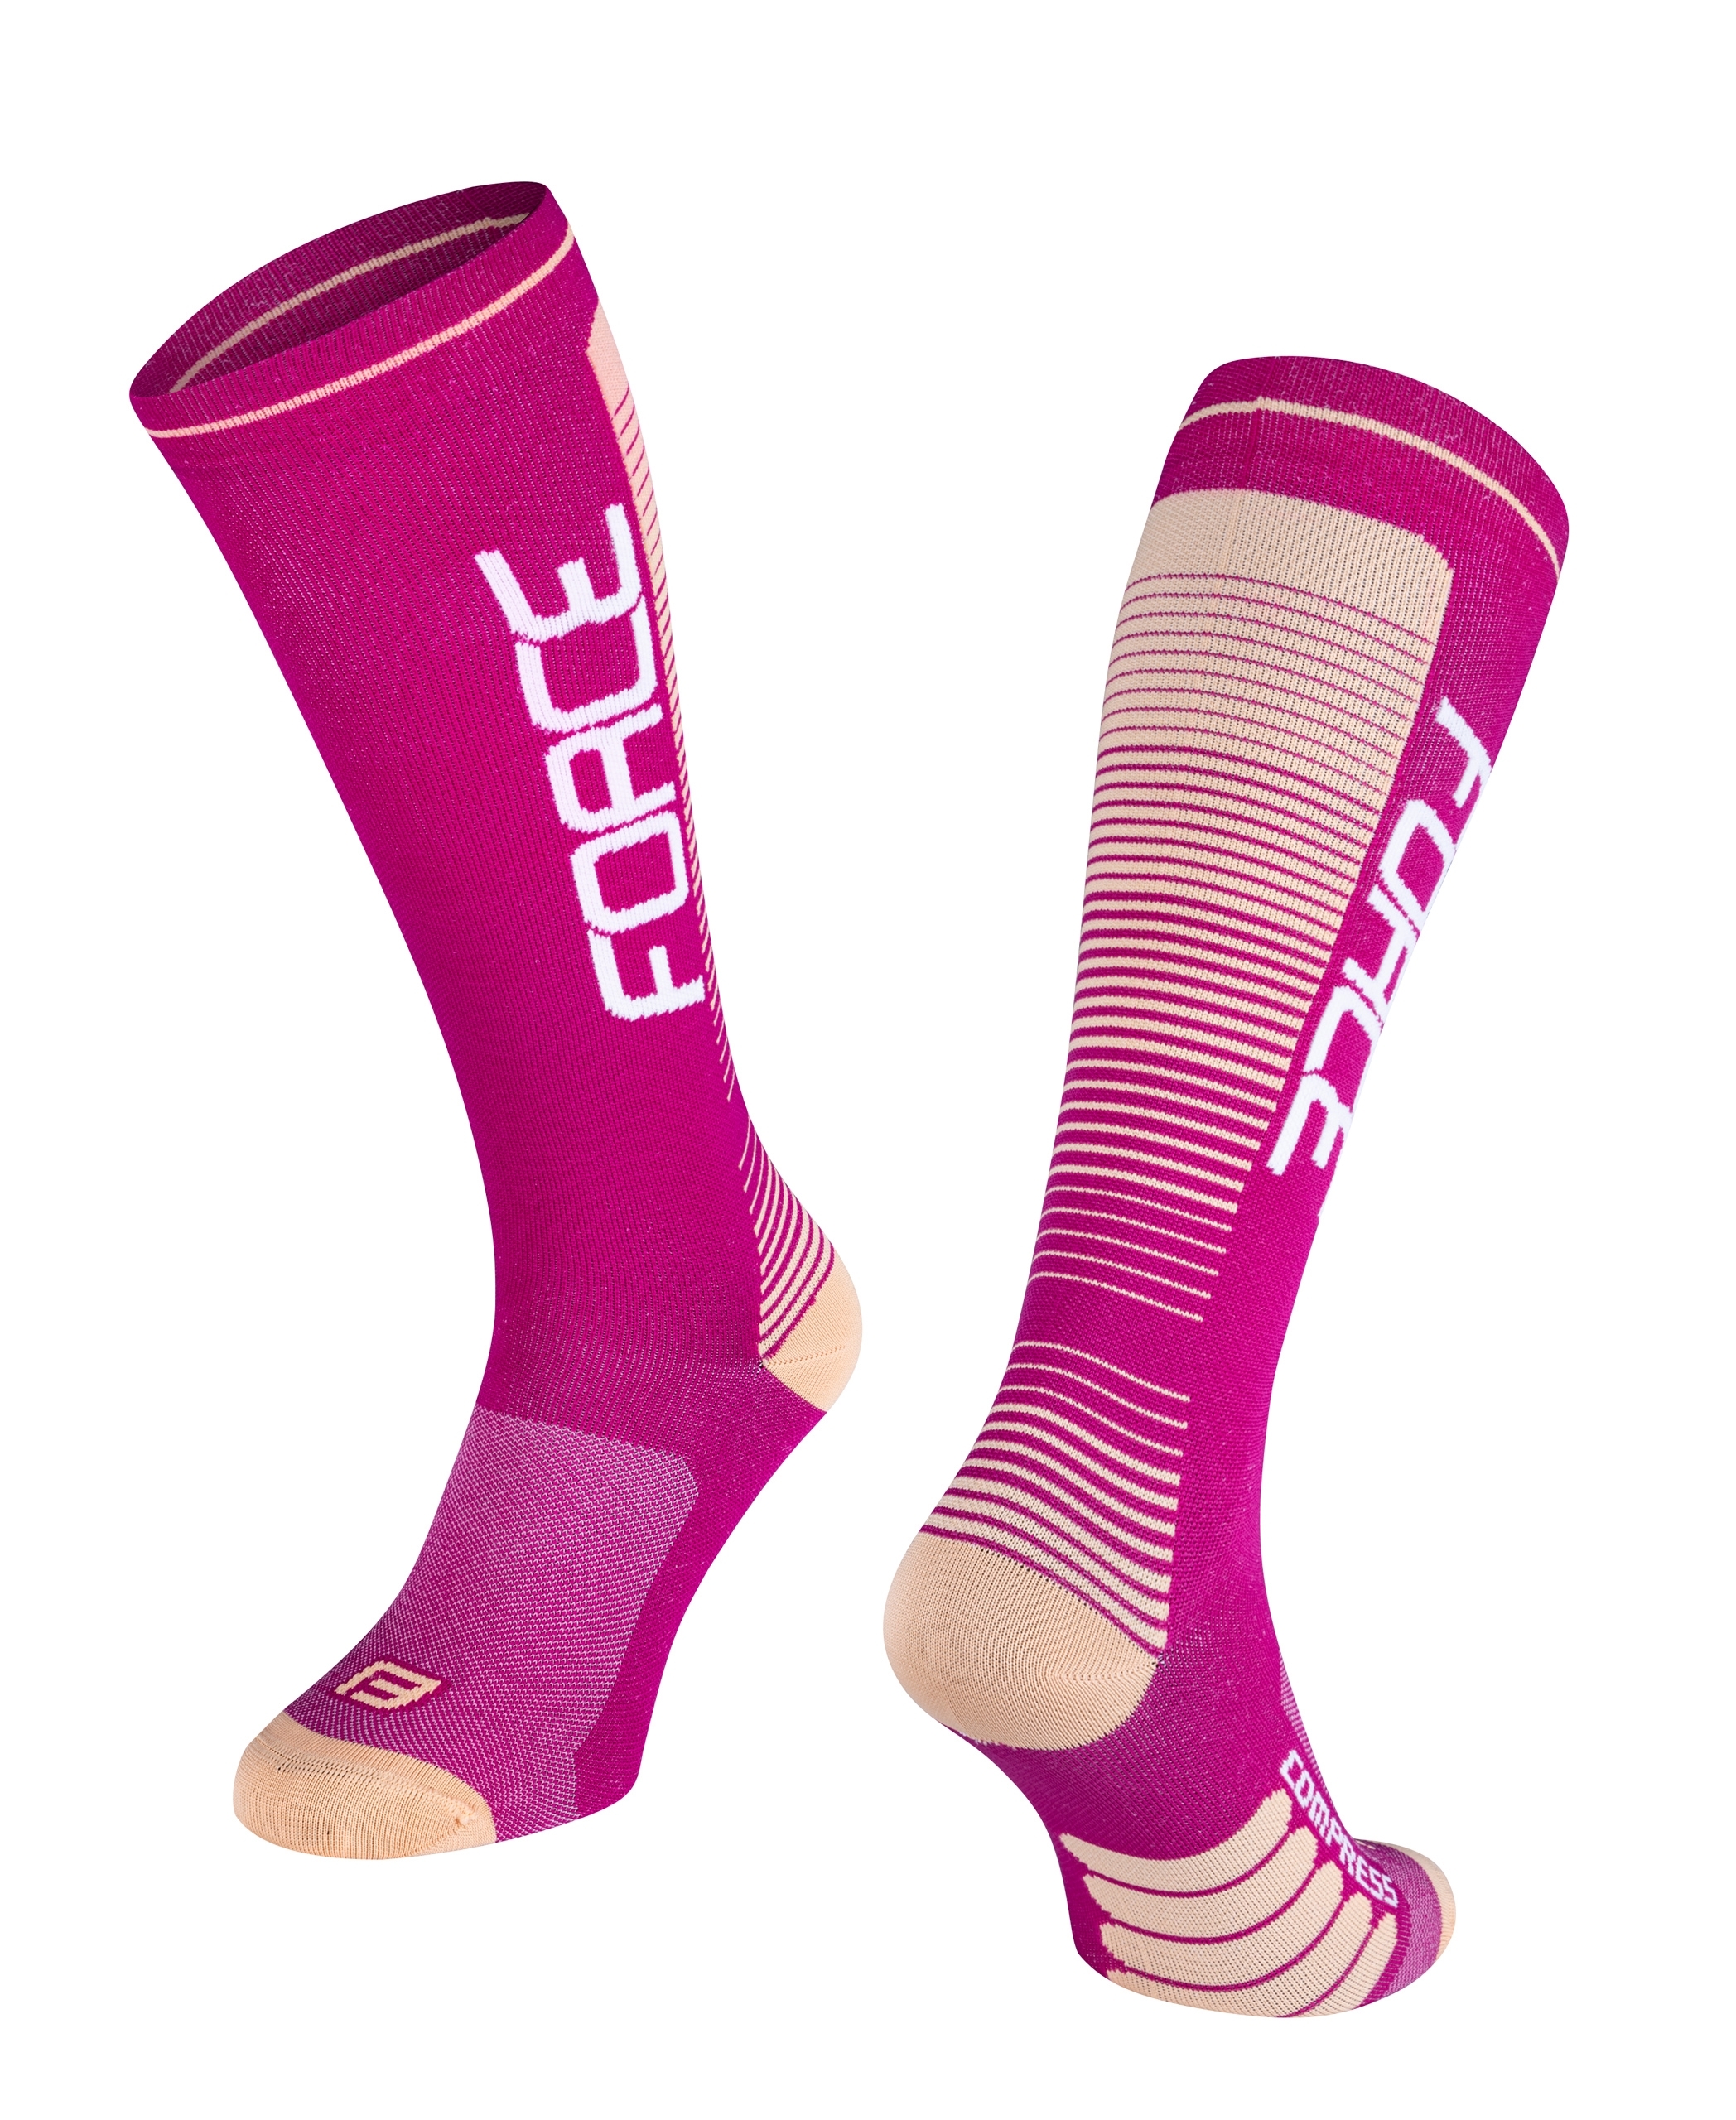 Kompresní ponožky FORCE Compress fialovo-meruňkové S-M/36-41